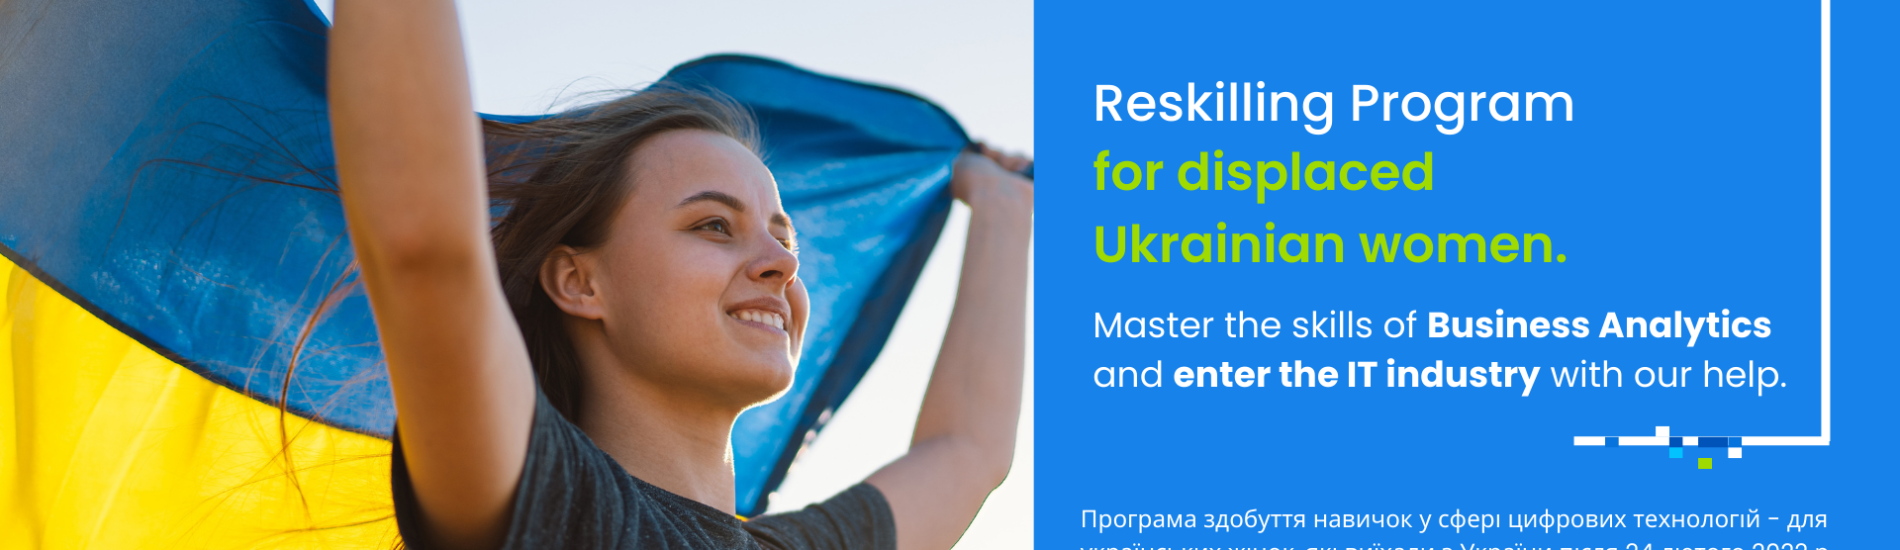 Startuje program “Reskilling Ukrainian Women to Tech and IT Jobs”, który umożliwi Ukrainkom zdobycie kompetencji w technologiach